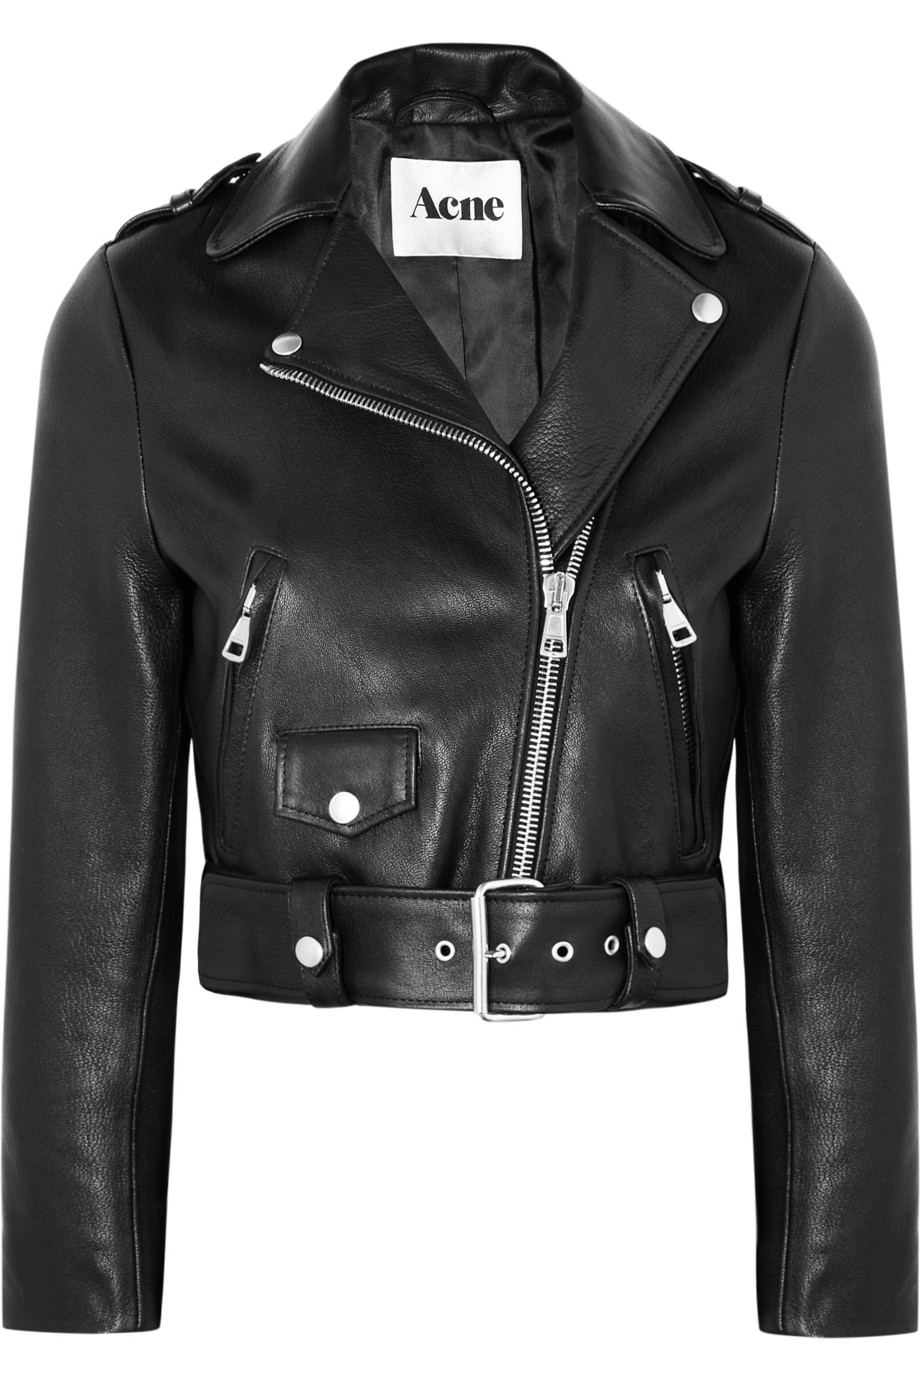 Acne studios Mape Cropped Leather Biker Jacket in Black | Lyst